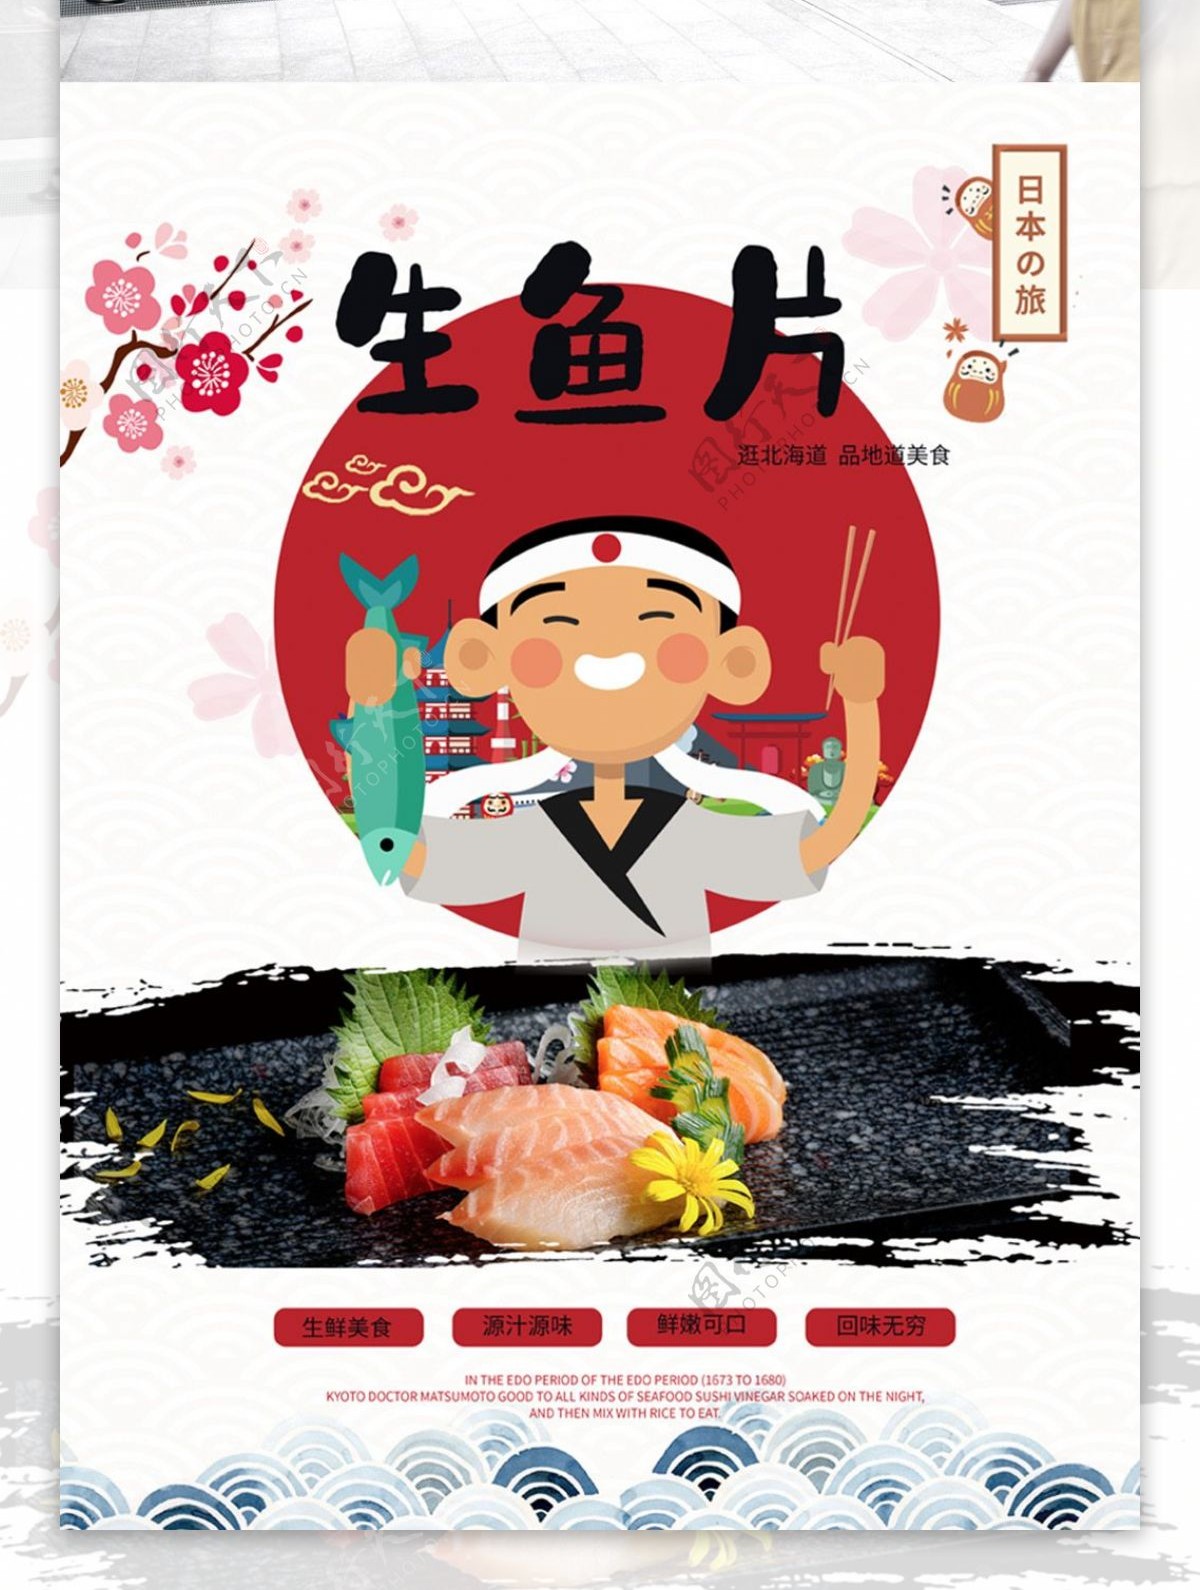 原创手绘小清新日式美食生鱼片海报